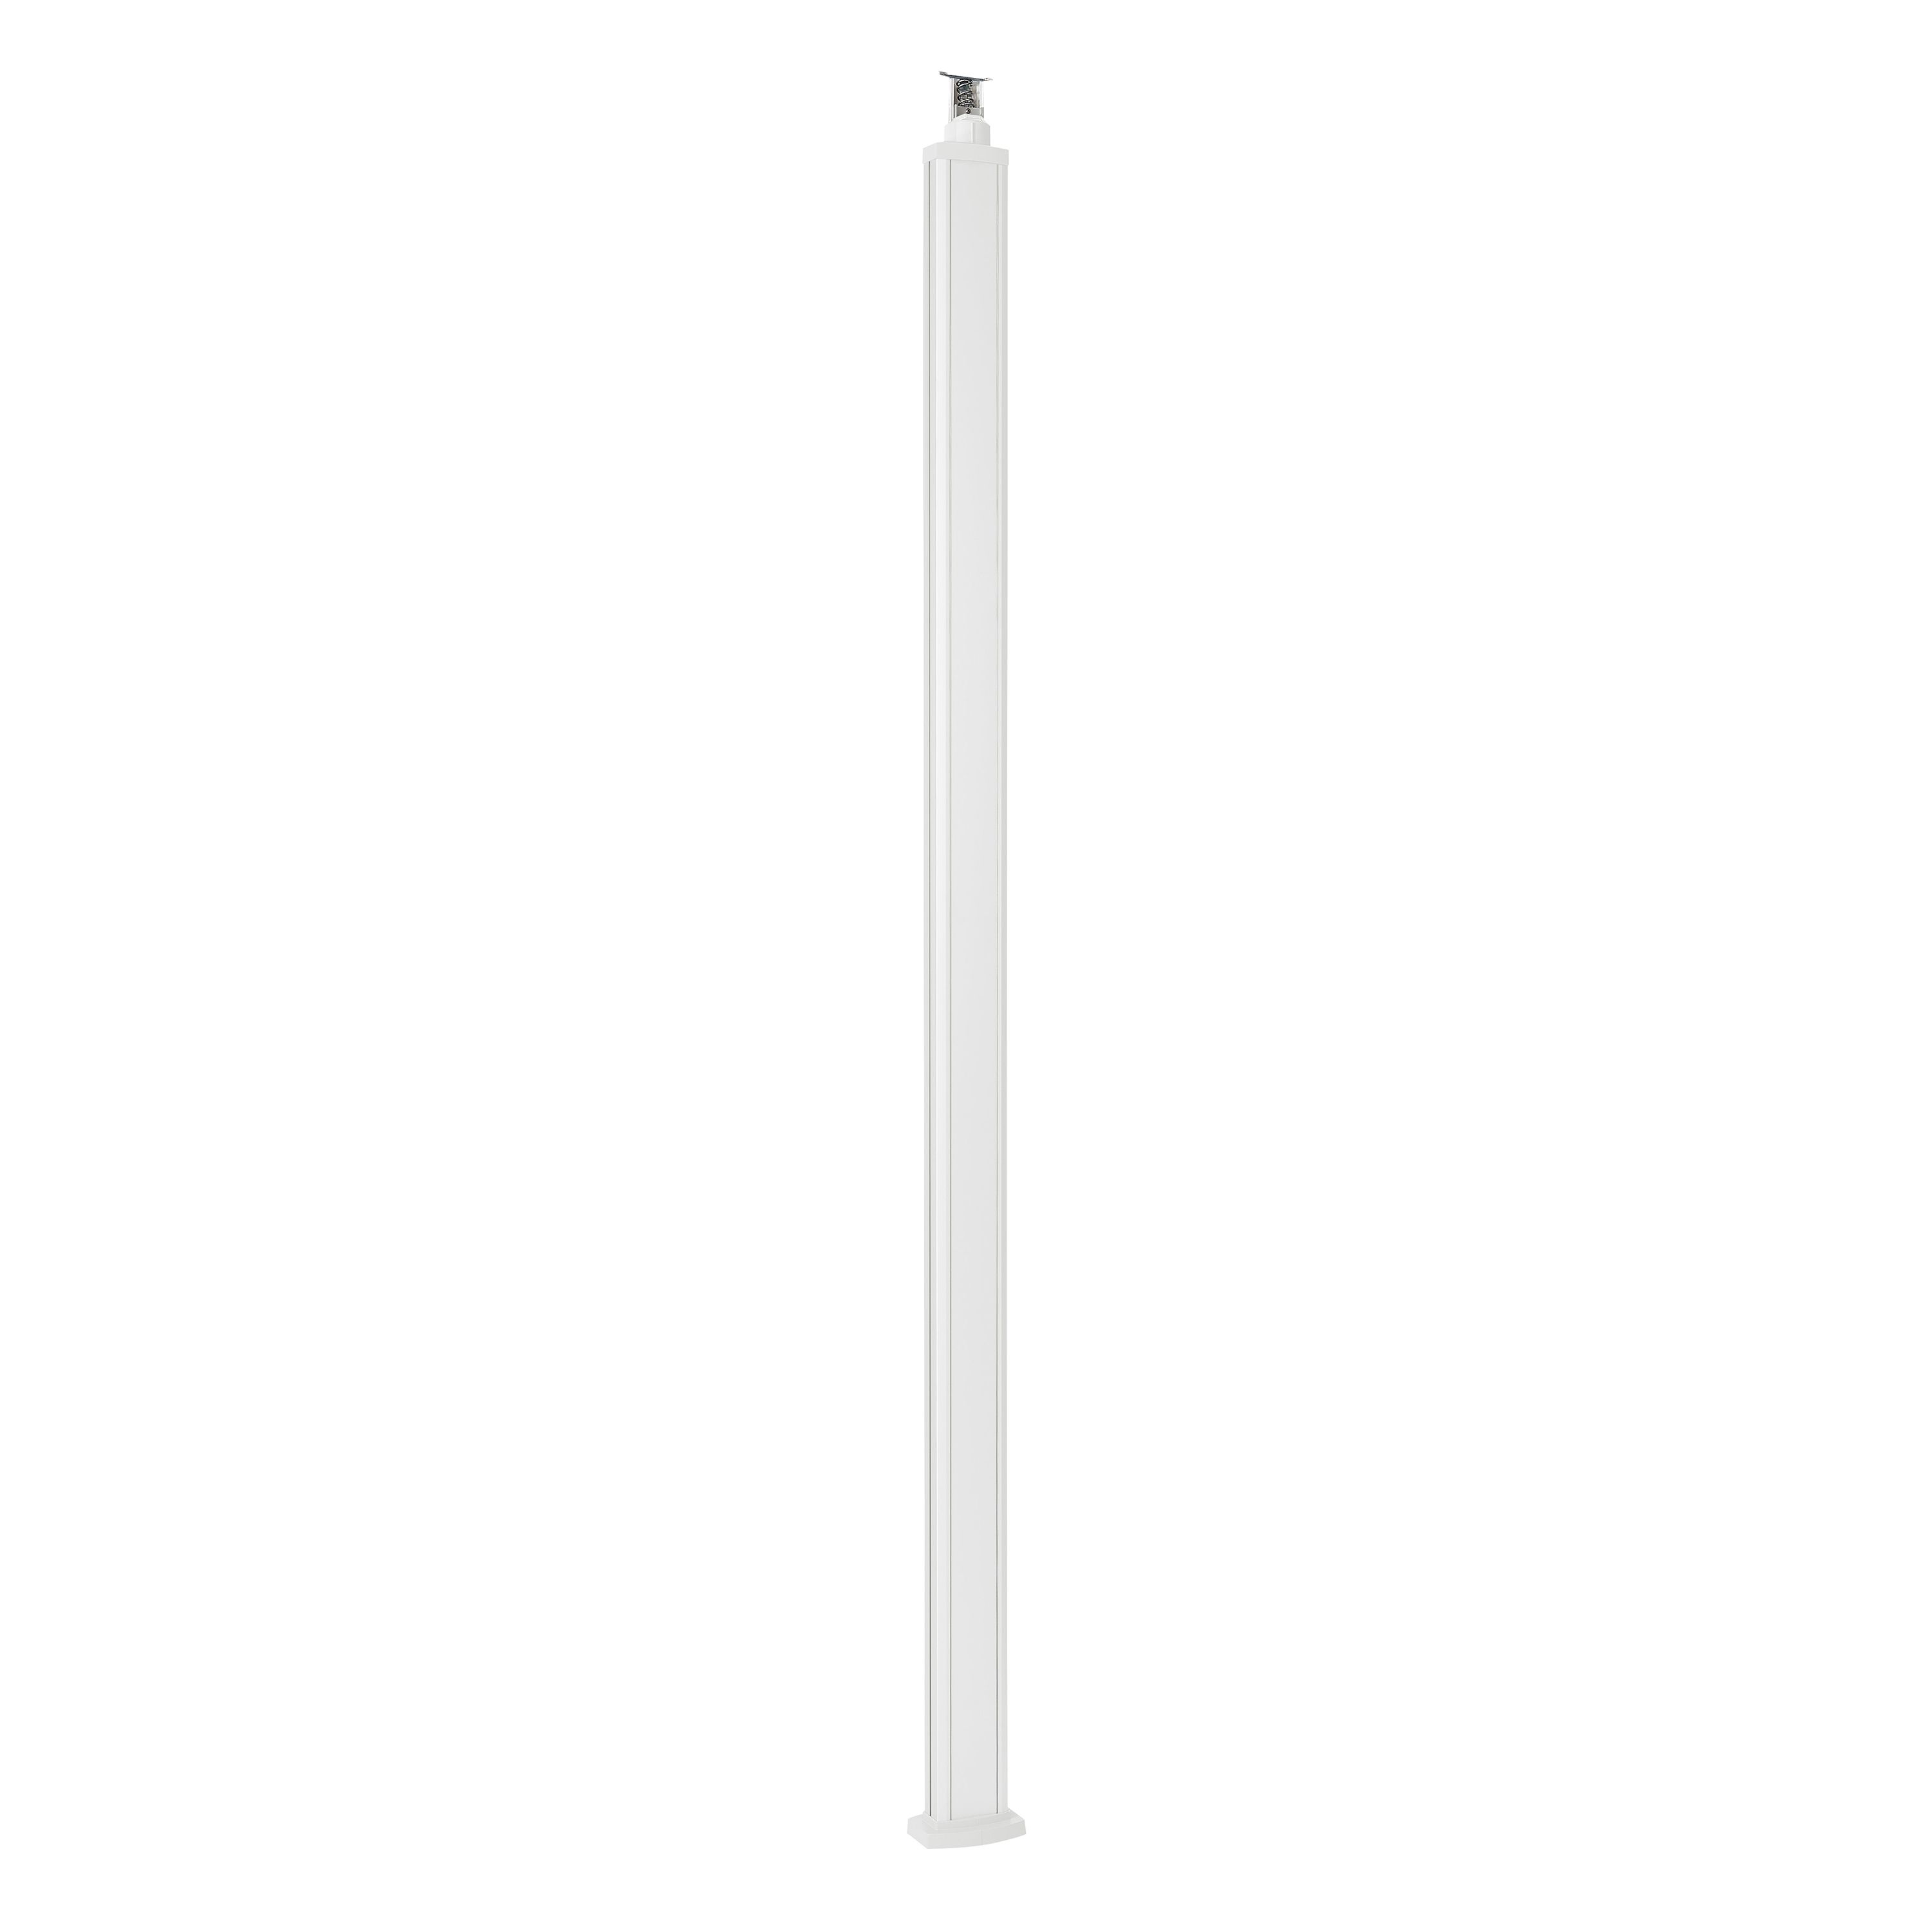 Универсальная колонна алюминиевая с крышкой из алюминия 1 секция, высота 2,77 метра, с возможностью увеличения высоты до 4,05 метра, цвет белый 653110 Legrand